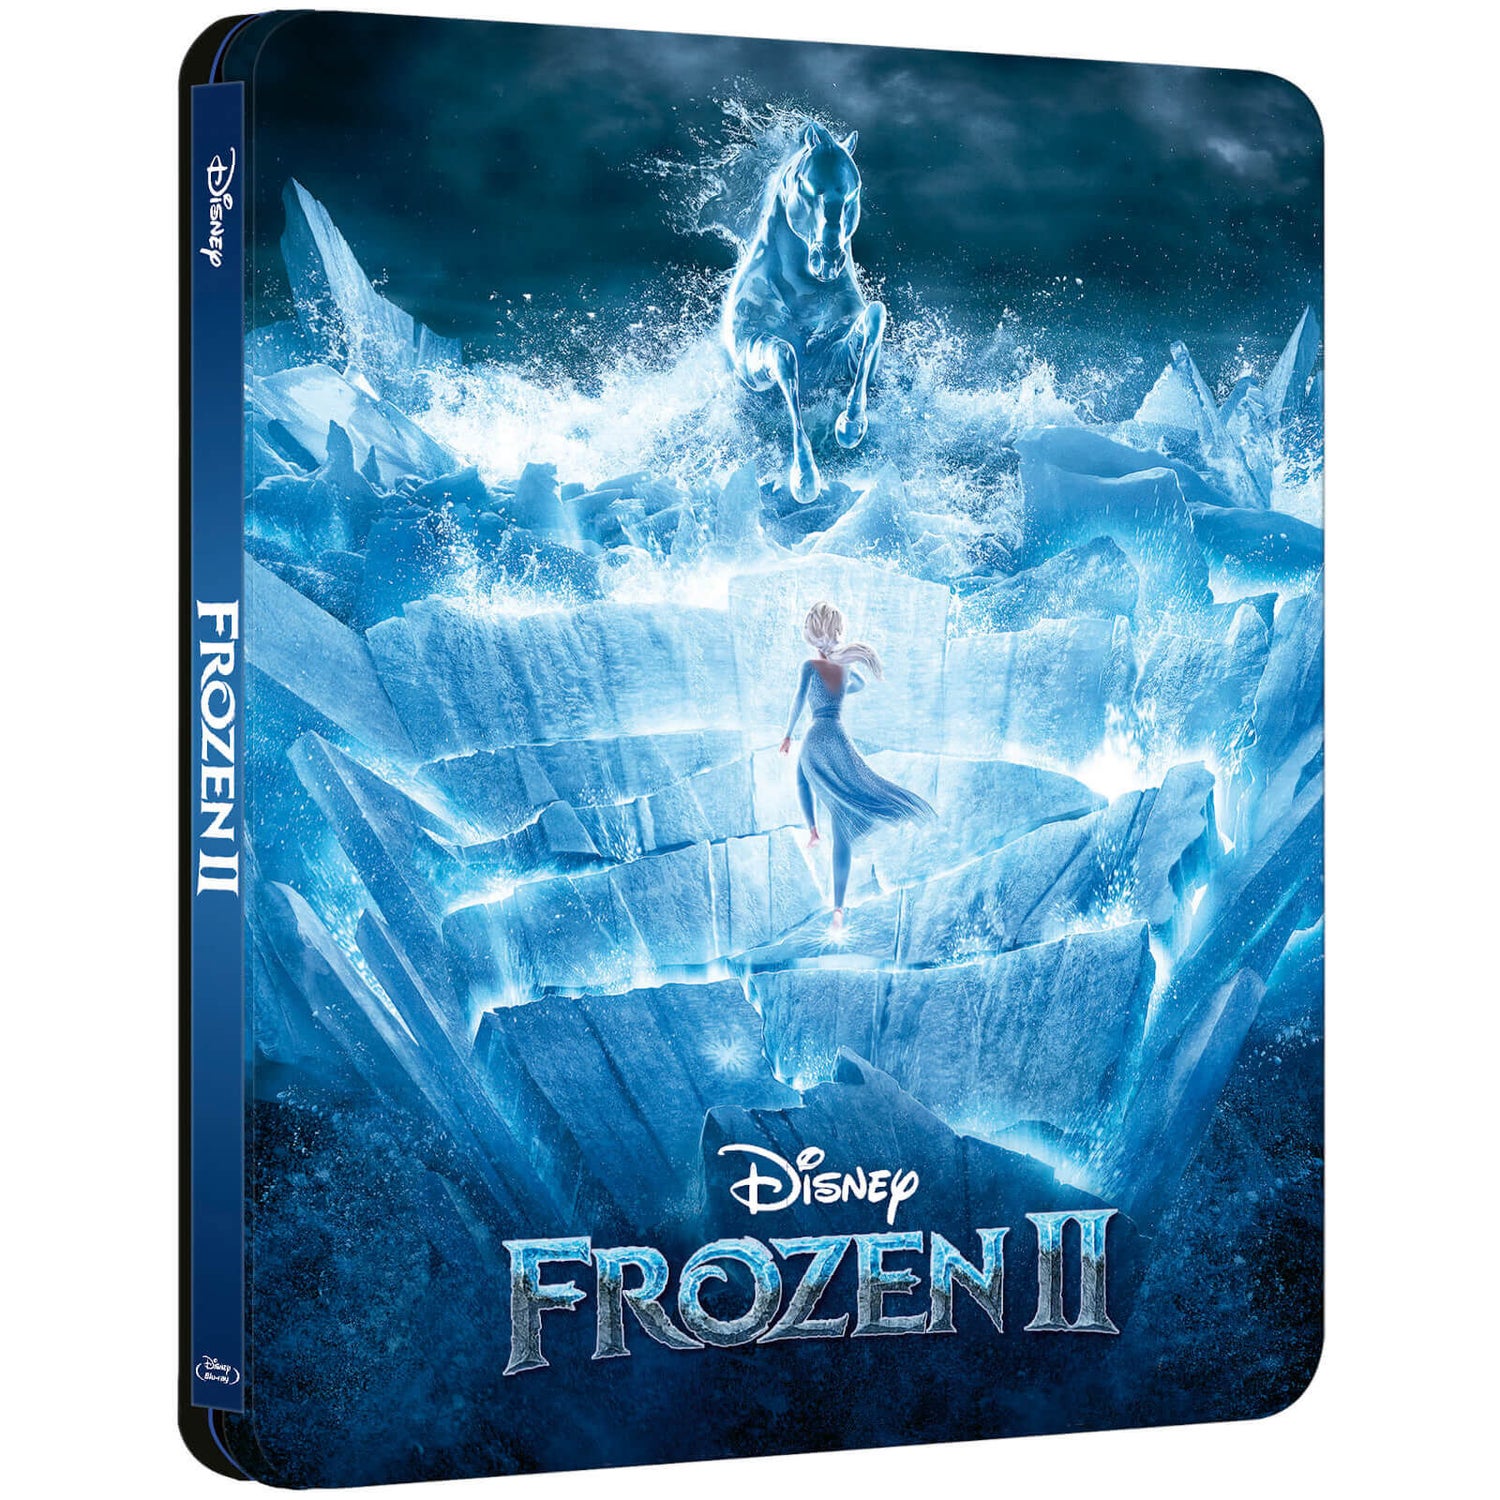 Disney’s Frozen 2 – 4K Ultra HD Zavvi Exclusive Steelbook (Includes 2D Blu-ray)